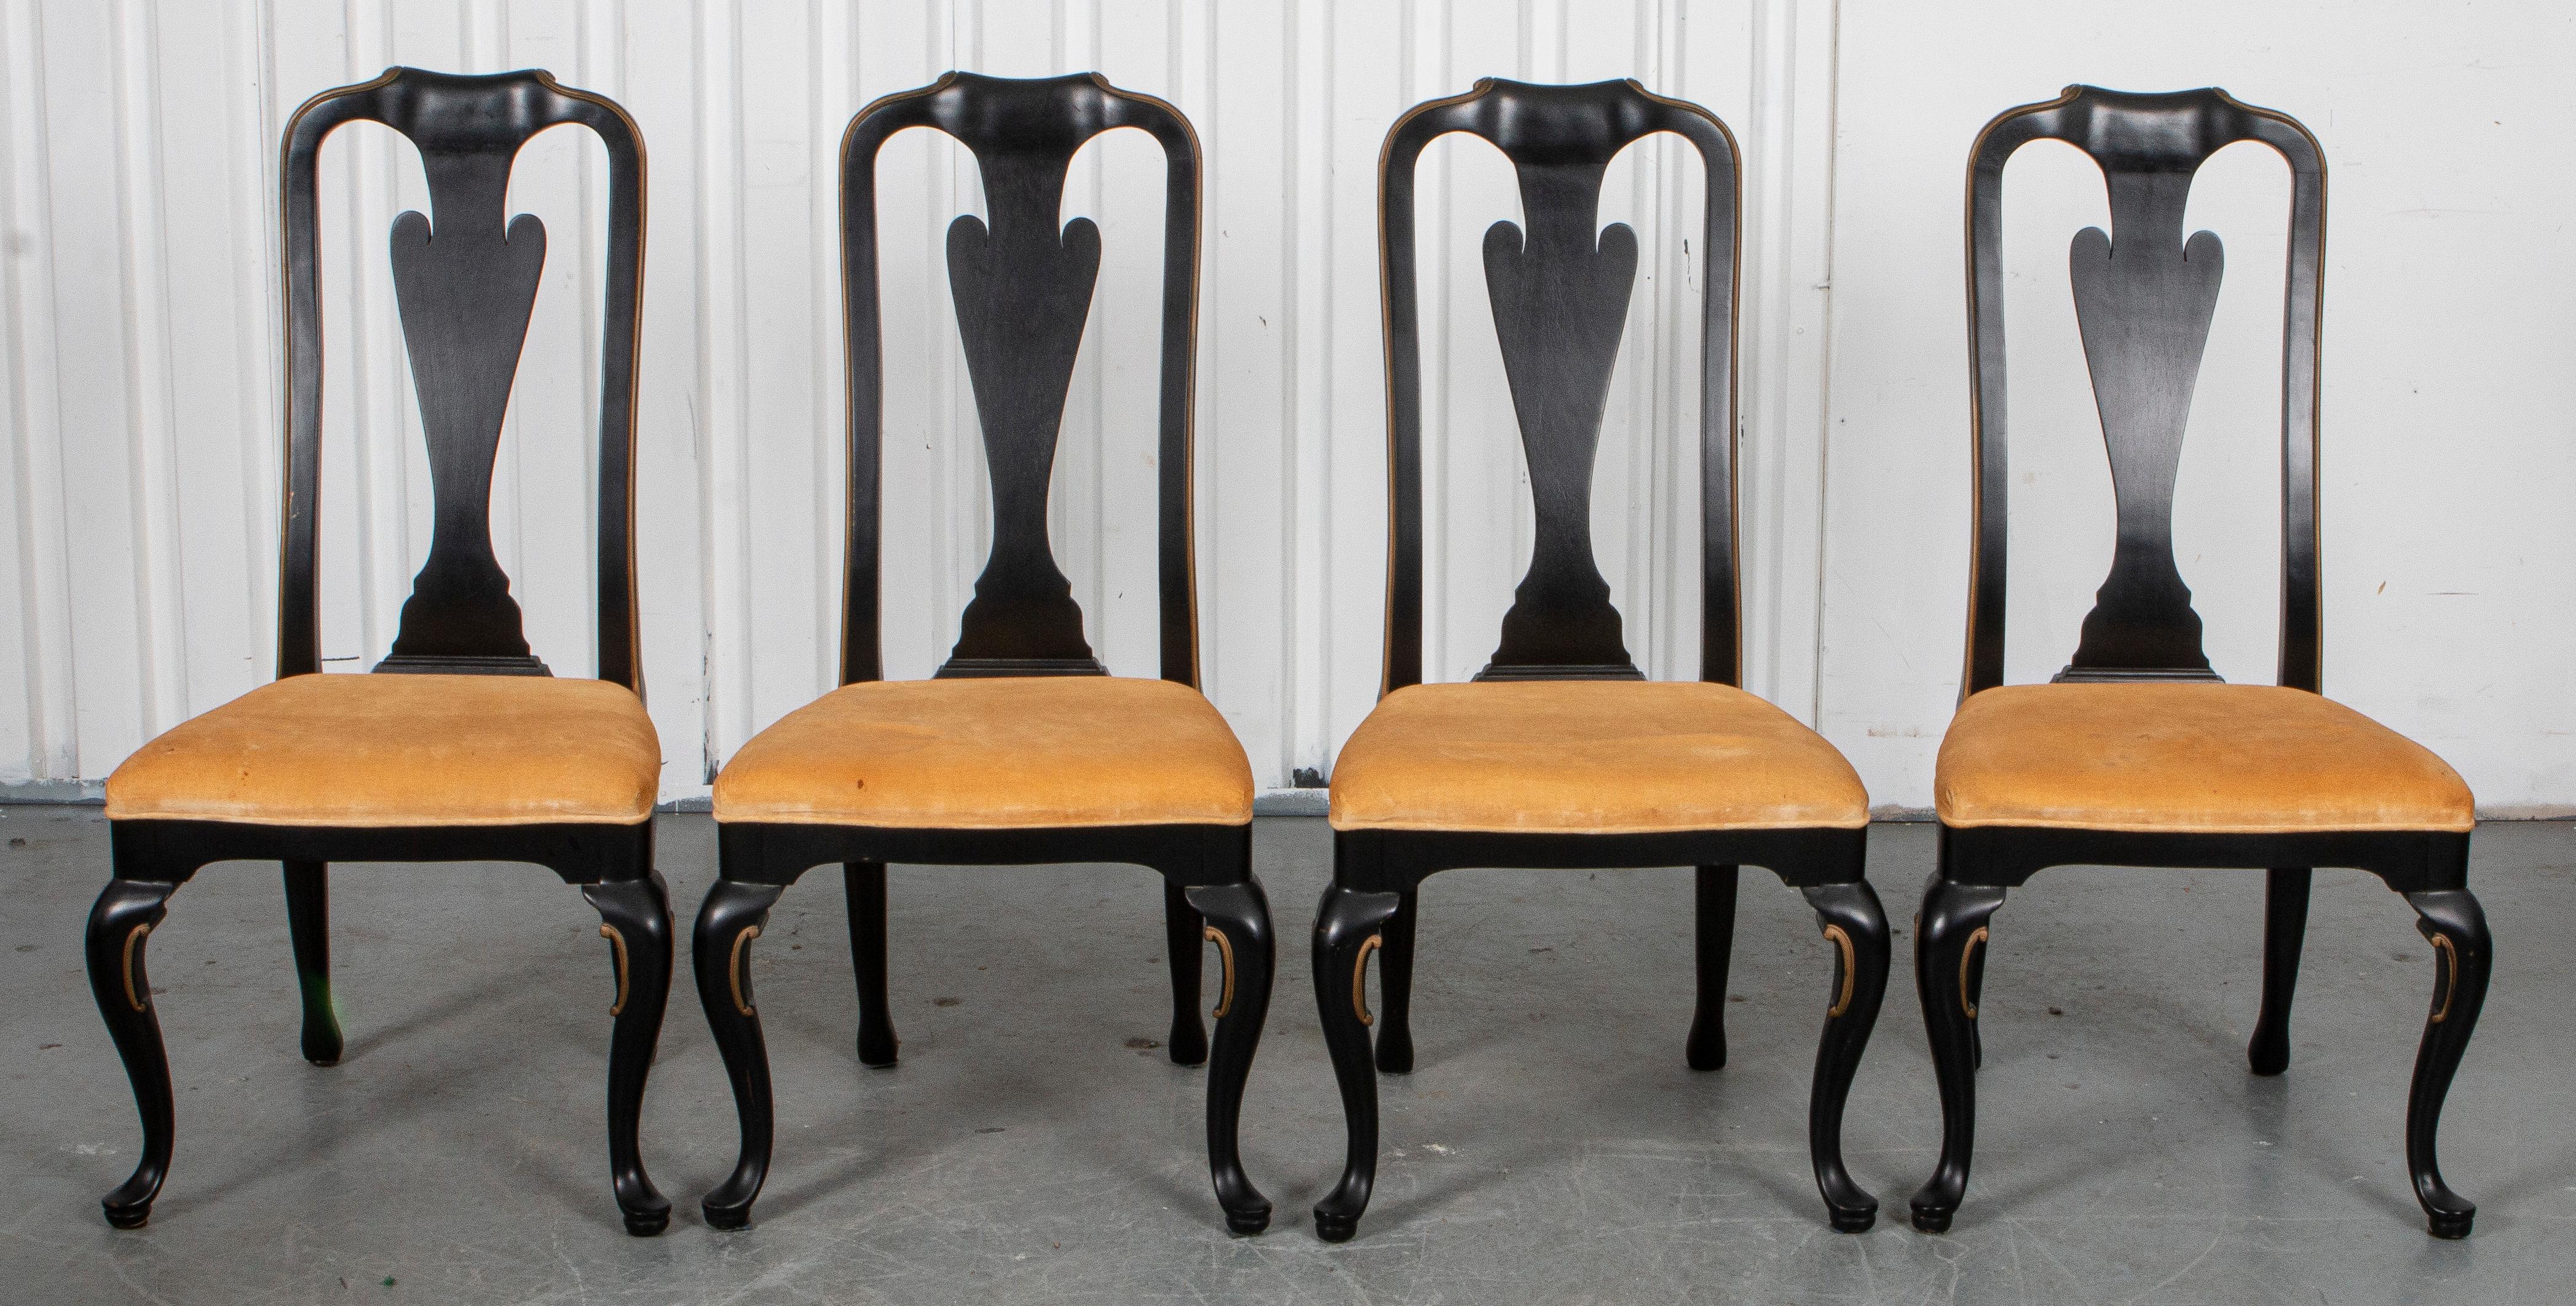 Quatre chaises d'appoint de style Queen Anne en ébène avec des détails rococo et des accents dorés autour des sièges en velours, probablement Widdicomb. Mesures : 43